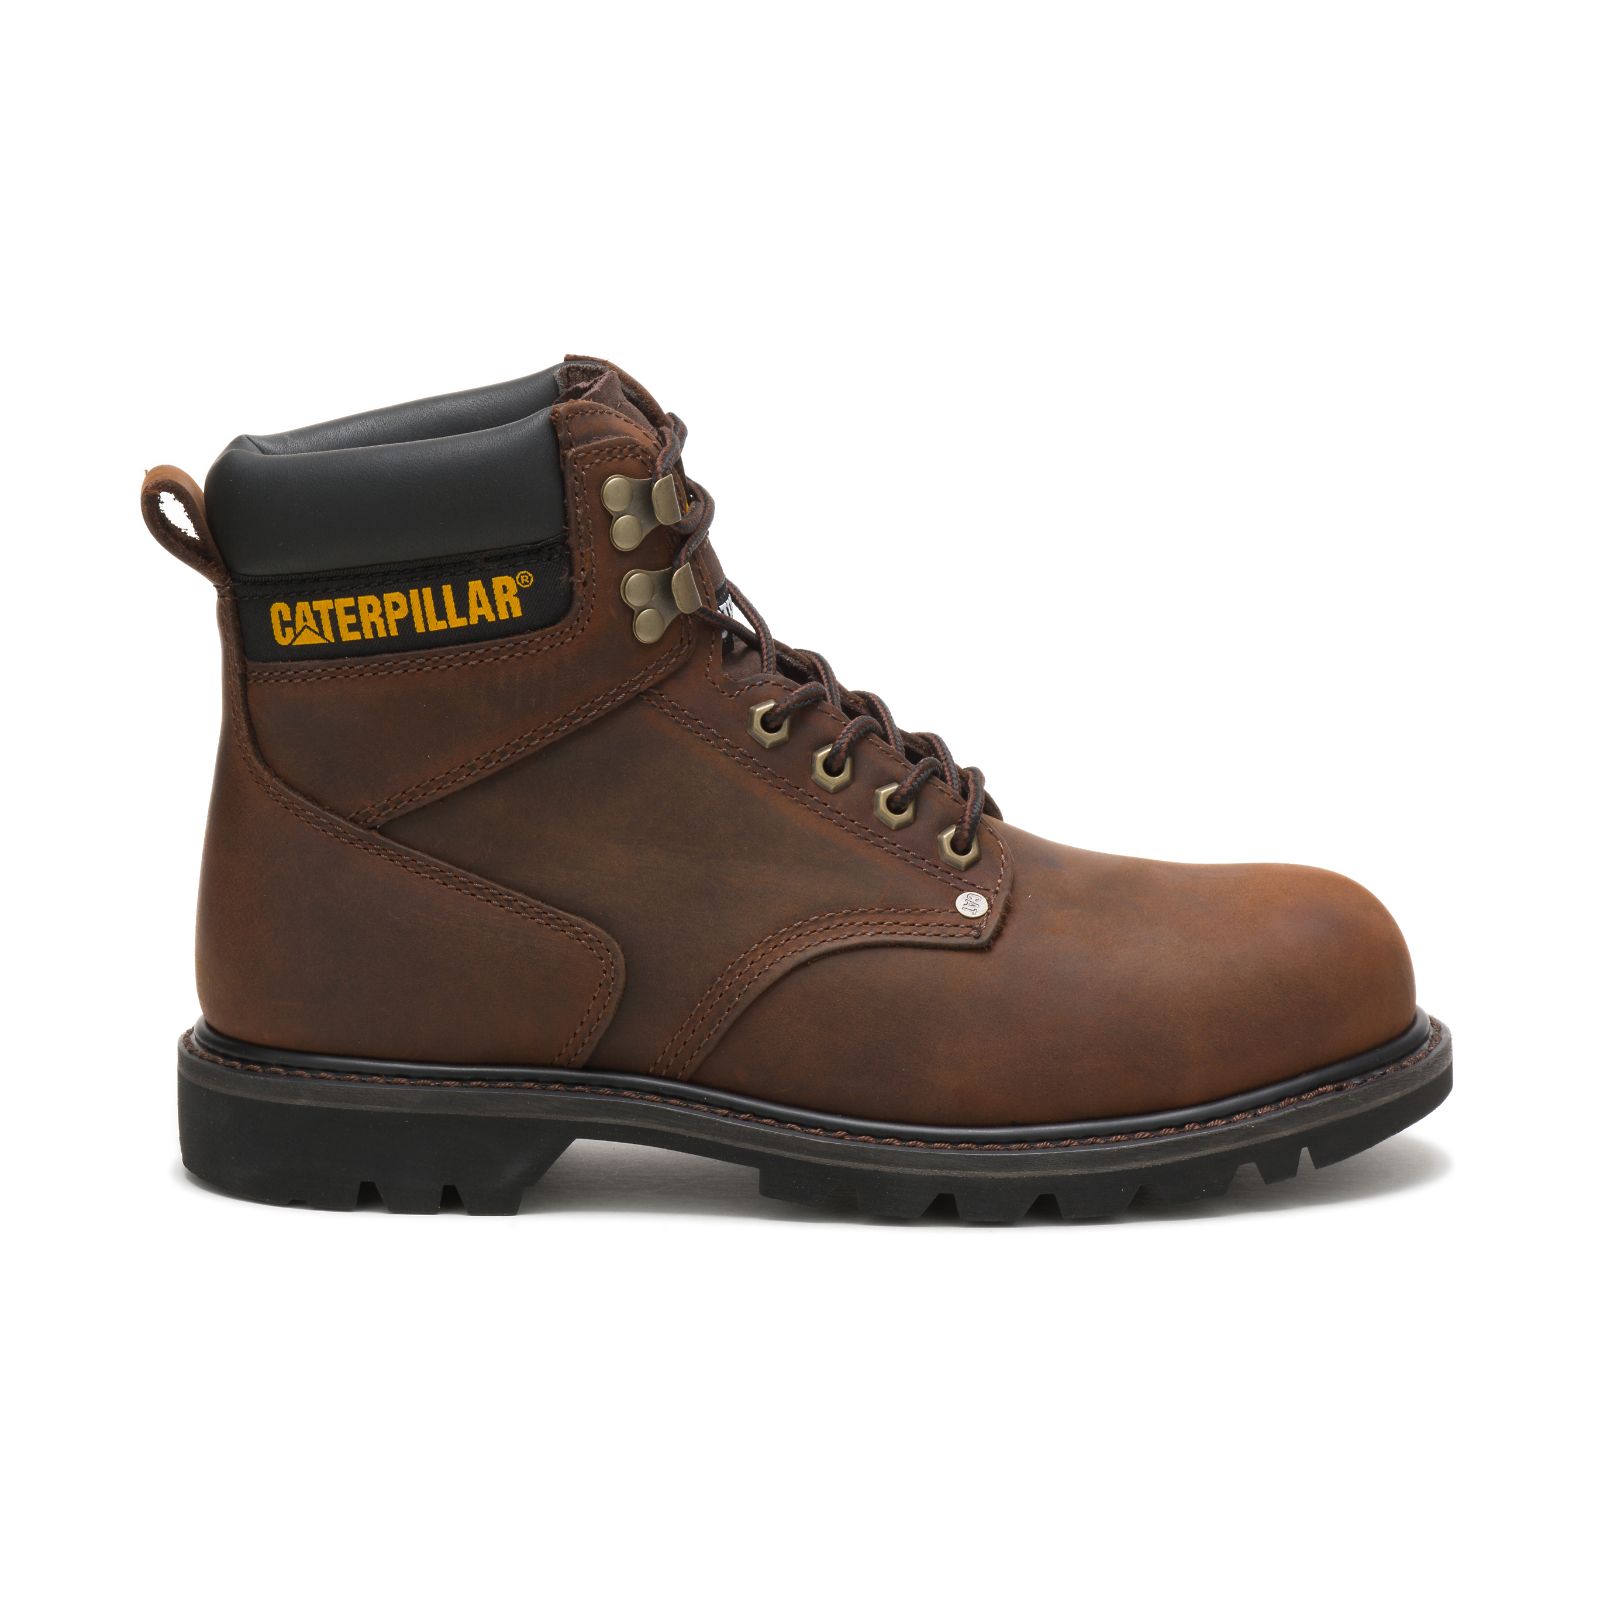 Caterpillar Work Boots UAE - Caterpillar Second Shift Steel Toe Mens - Dark Brown ZBHKYF057